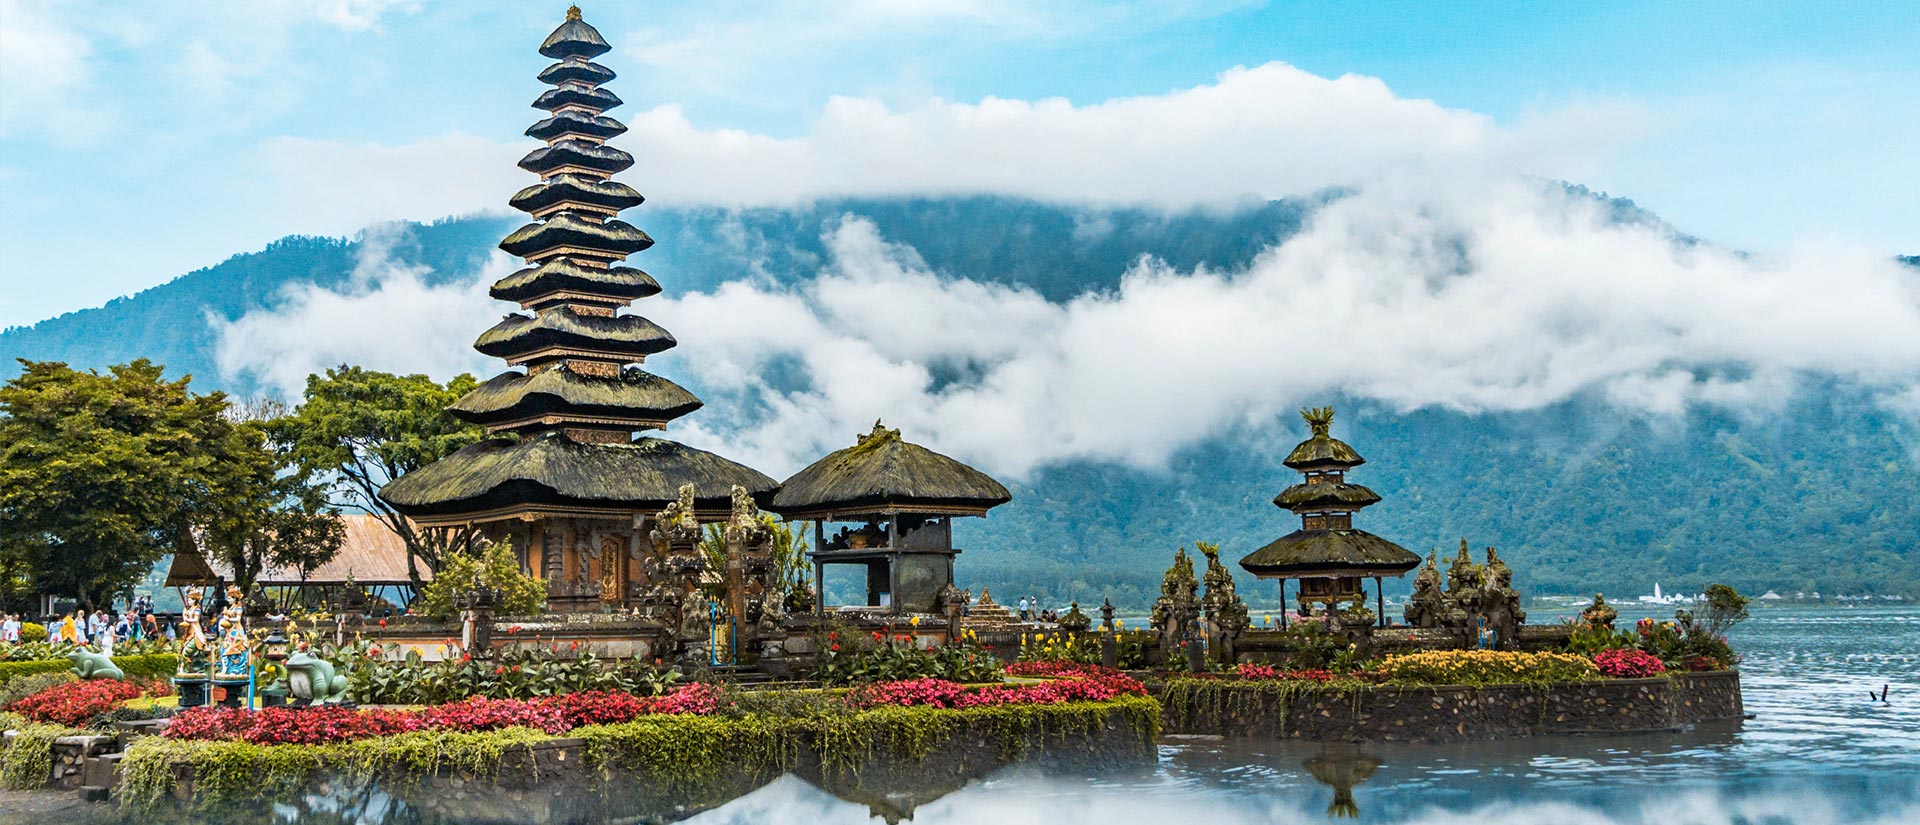 טיול לאינדונזיה - 13 יום - באלי, טקסים ופולחן בגן העדן האחרון